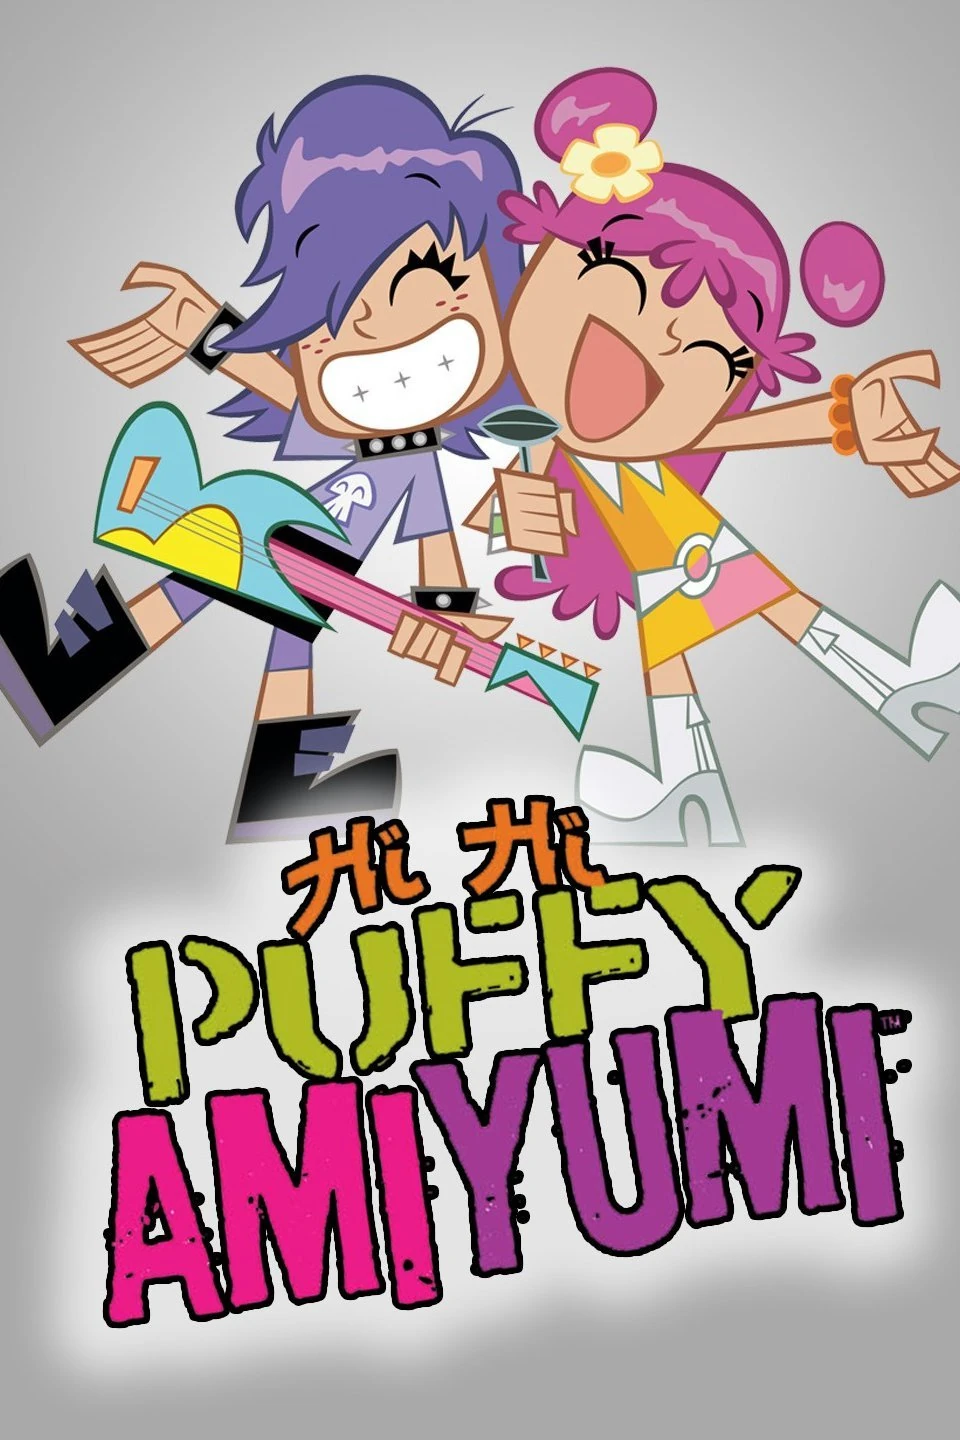 Hi Hi Puffy AmiYumi, Best TV Shows Wiki